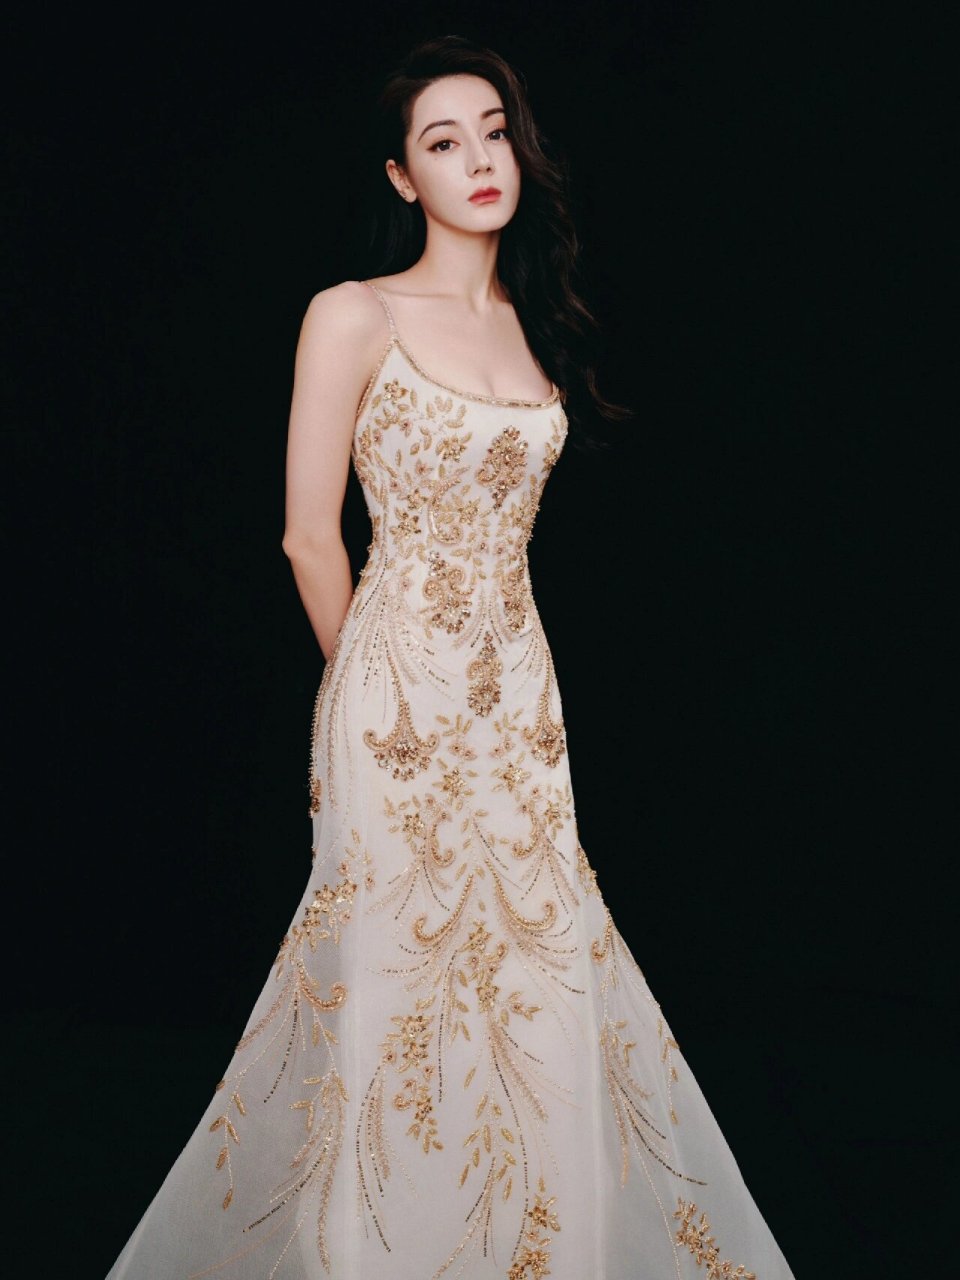 迪丽热巴新造型也太美了吧,穿金色花卉亮片礼服裙优雅又性感,美出天际